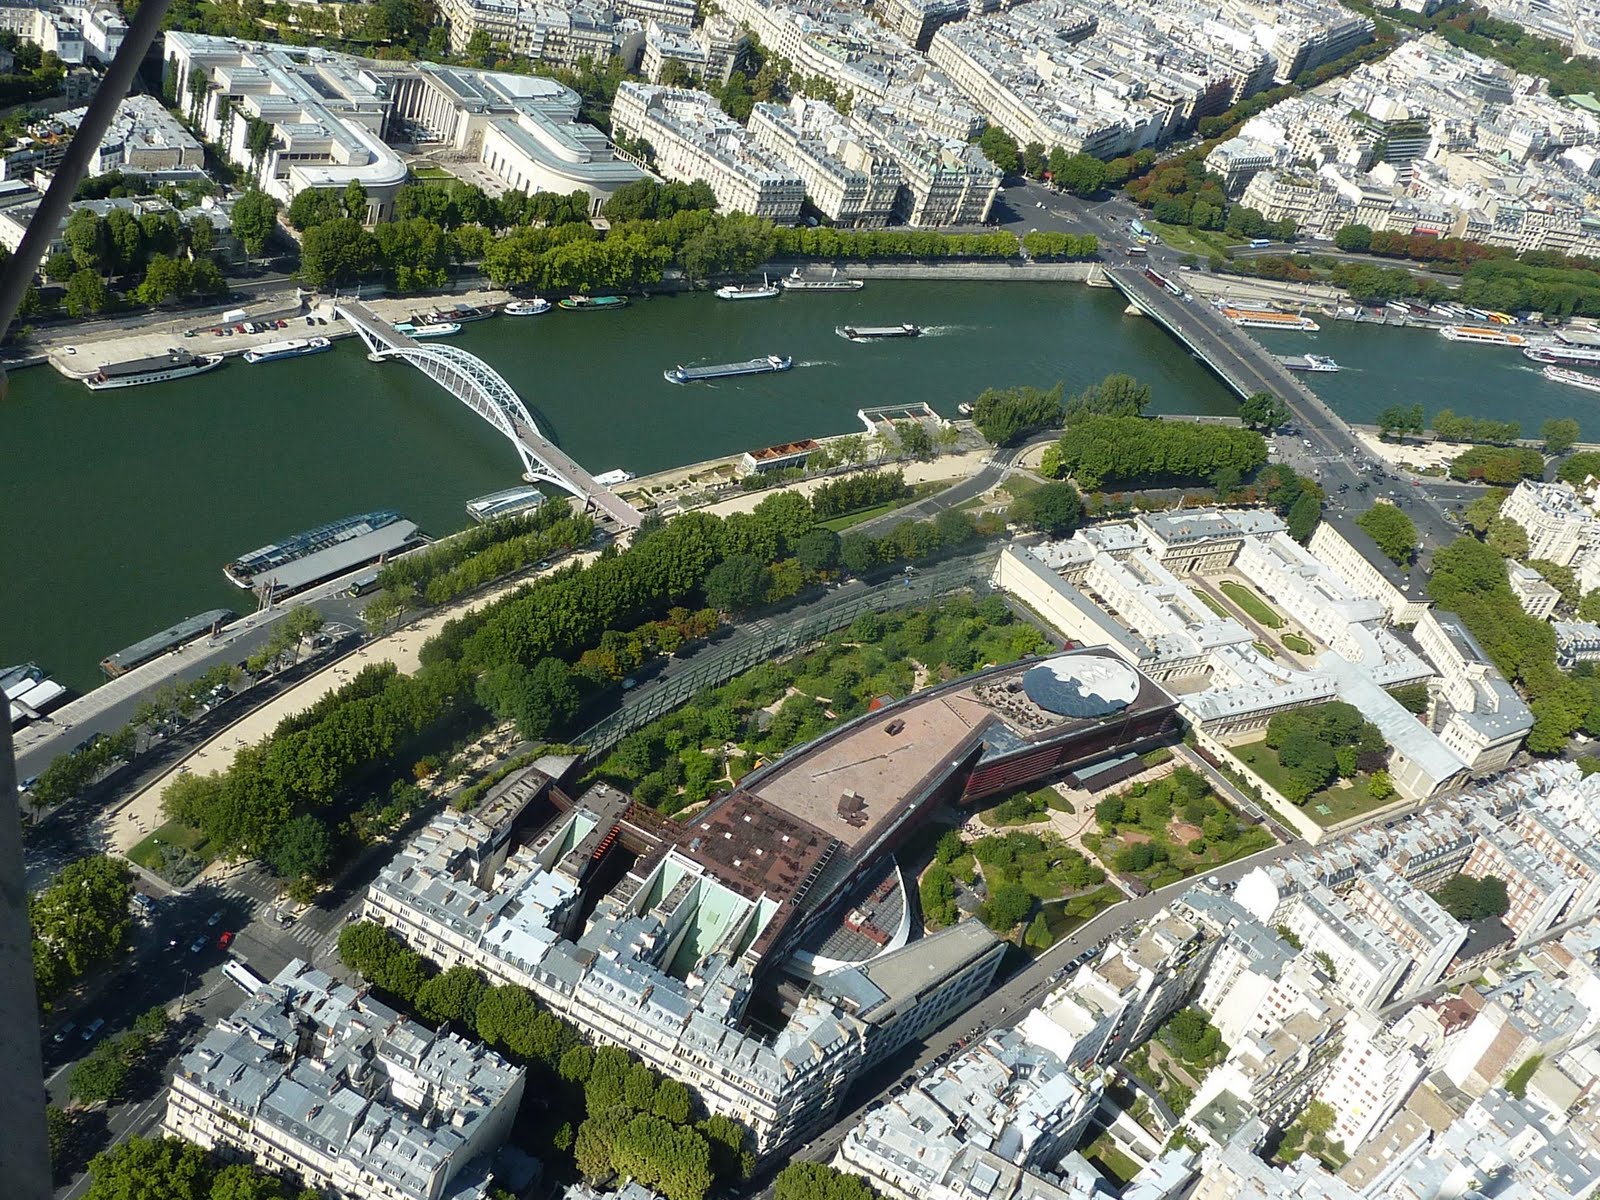 Vista aérea del Museo del Quai Branly, junto al Sena, el MAM (Museo de arte contemporánea) y la Torre Eiffel. Se observa bien la integración del edificio con los jardines, los mergenes del Sena y el resto de los edificios.